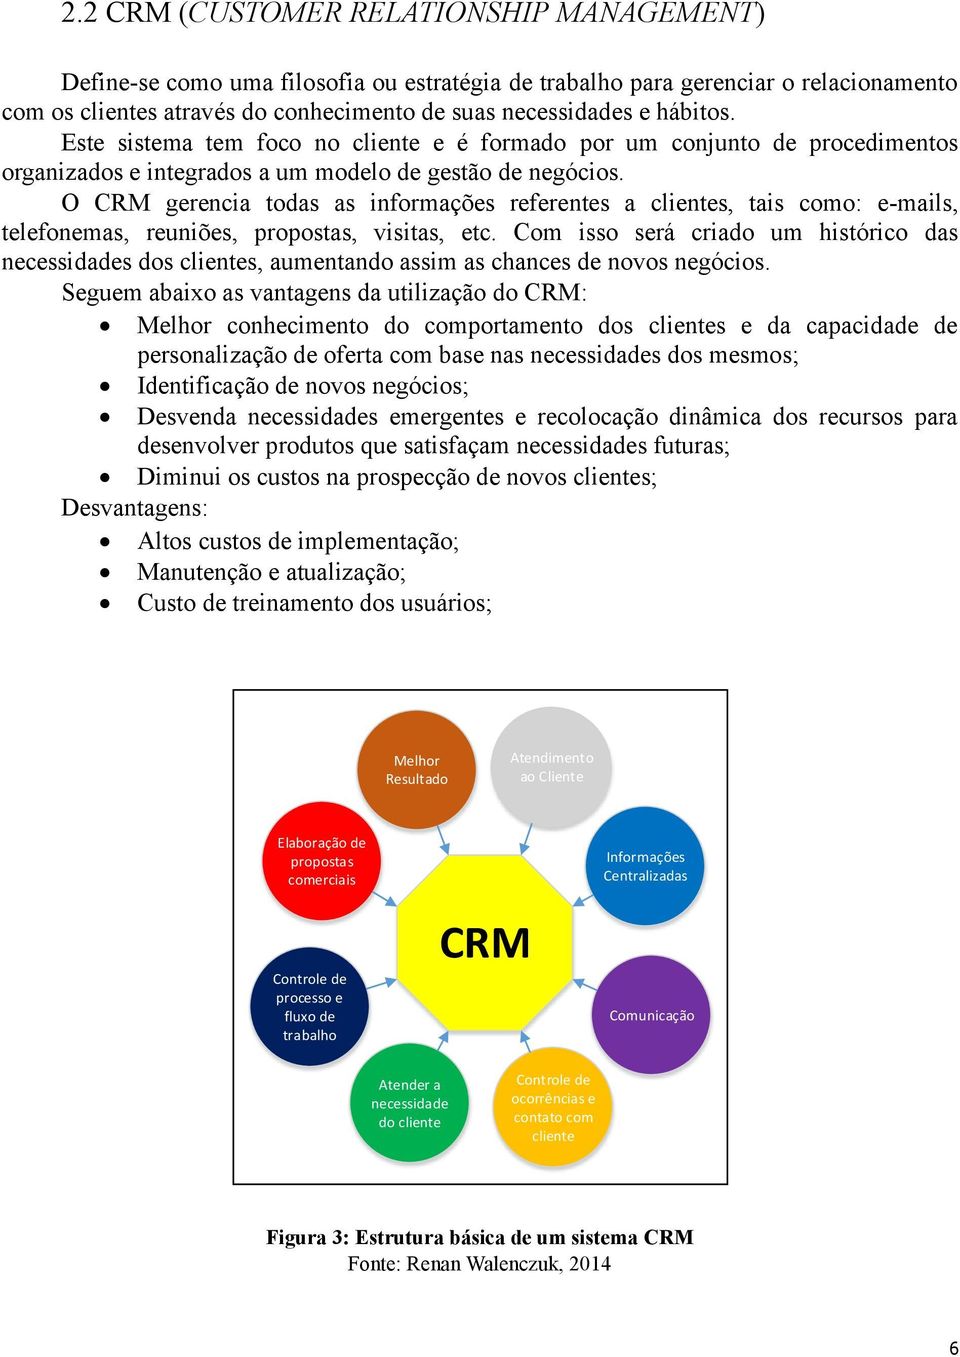 O CRM gerencia todas as informações referentes a clientes, tais como: e-mails, telefonemas, reuniões, propostas, visitas, etc.